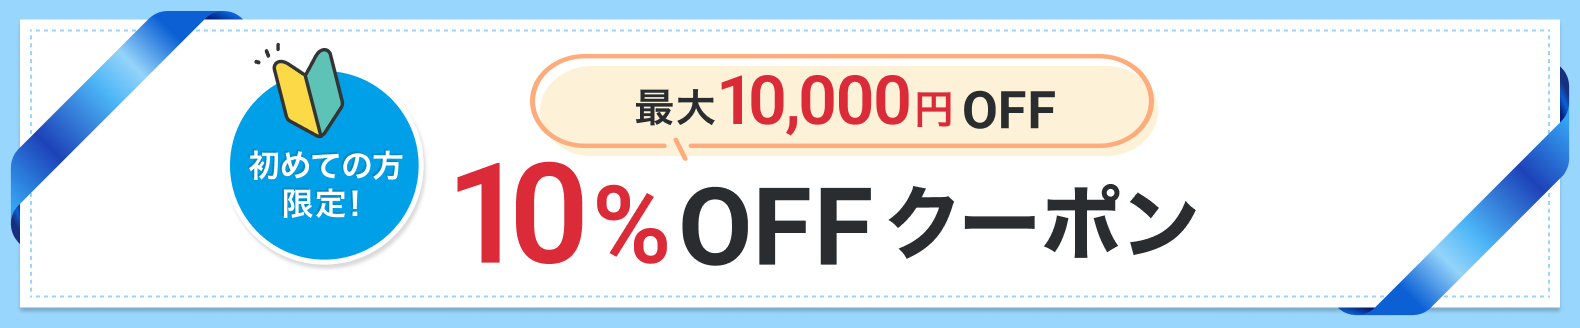 最大10,000円OFF 10%OFFクーポン